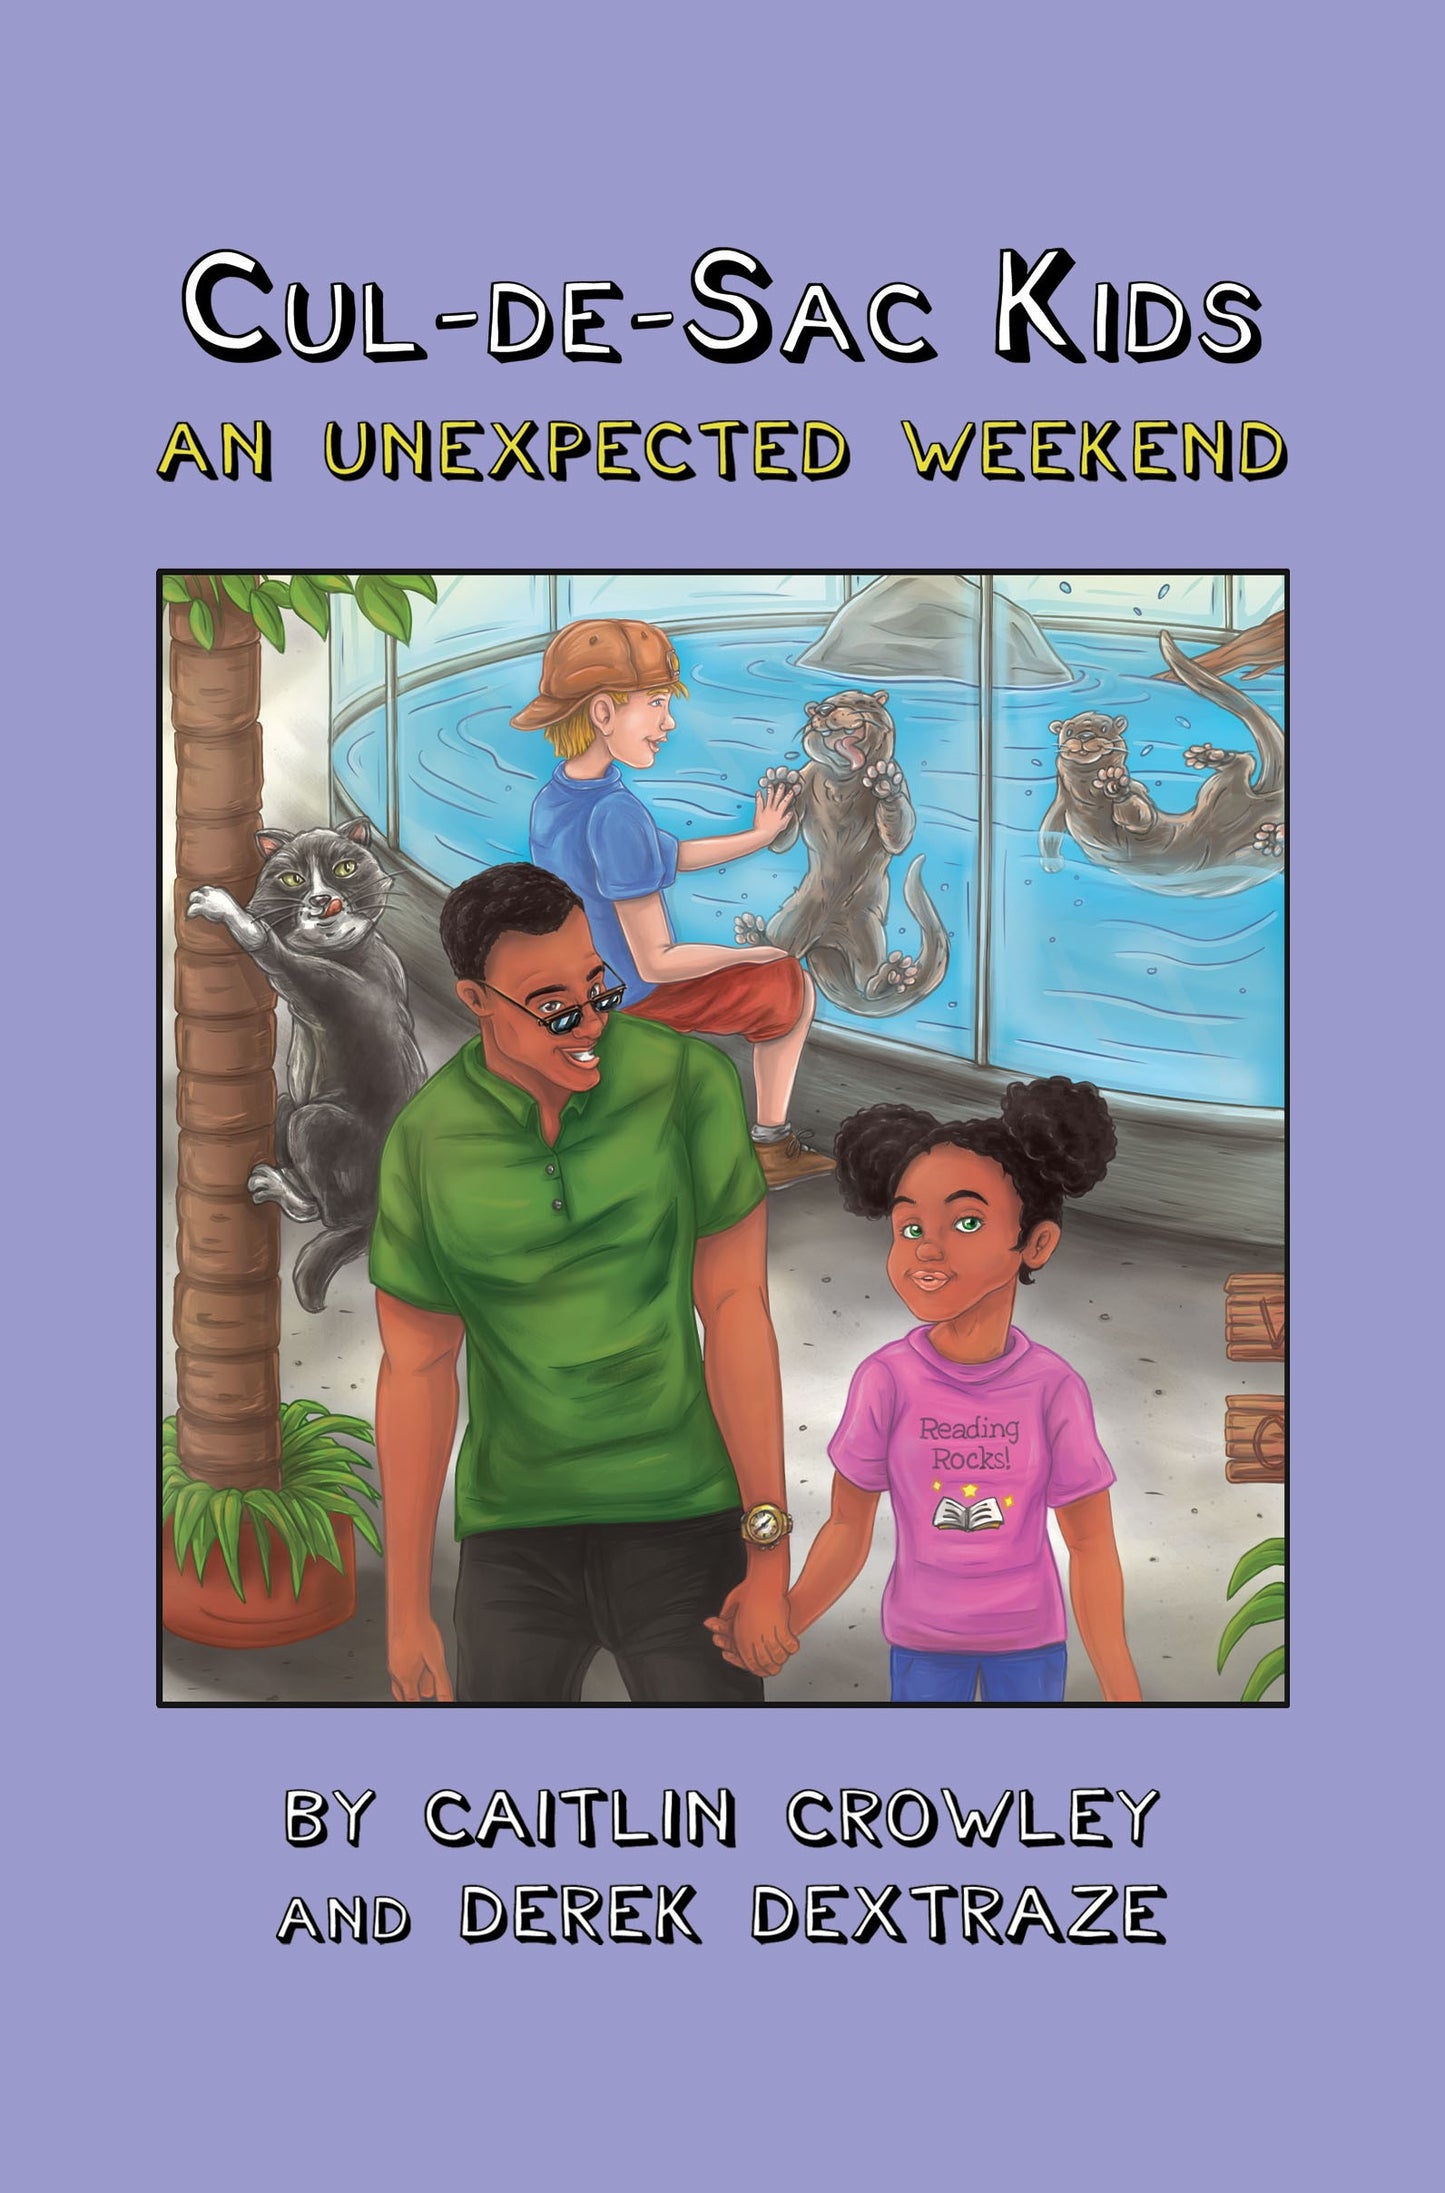 Book 2 - Cul-de-sac Kids: An Unexpected Weekend 